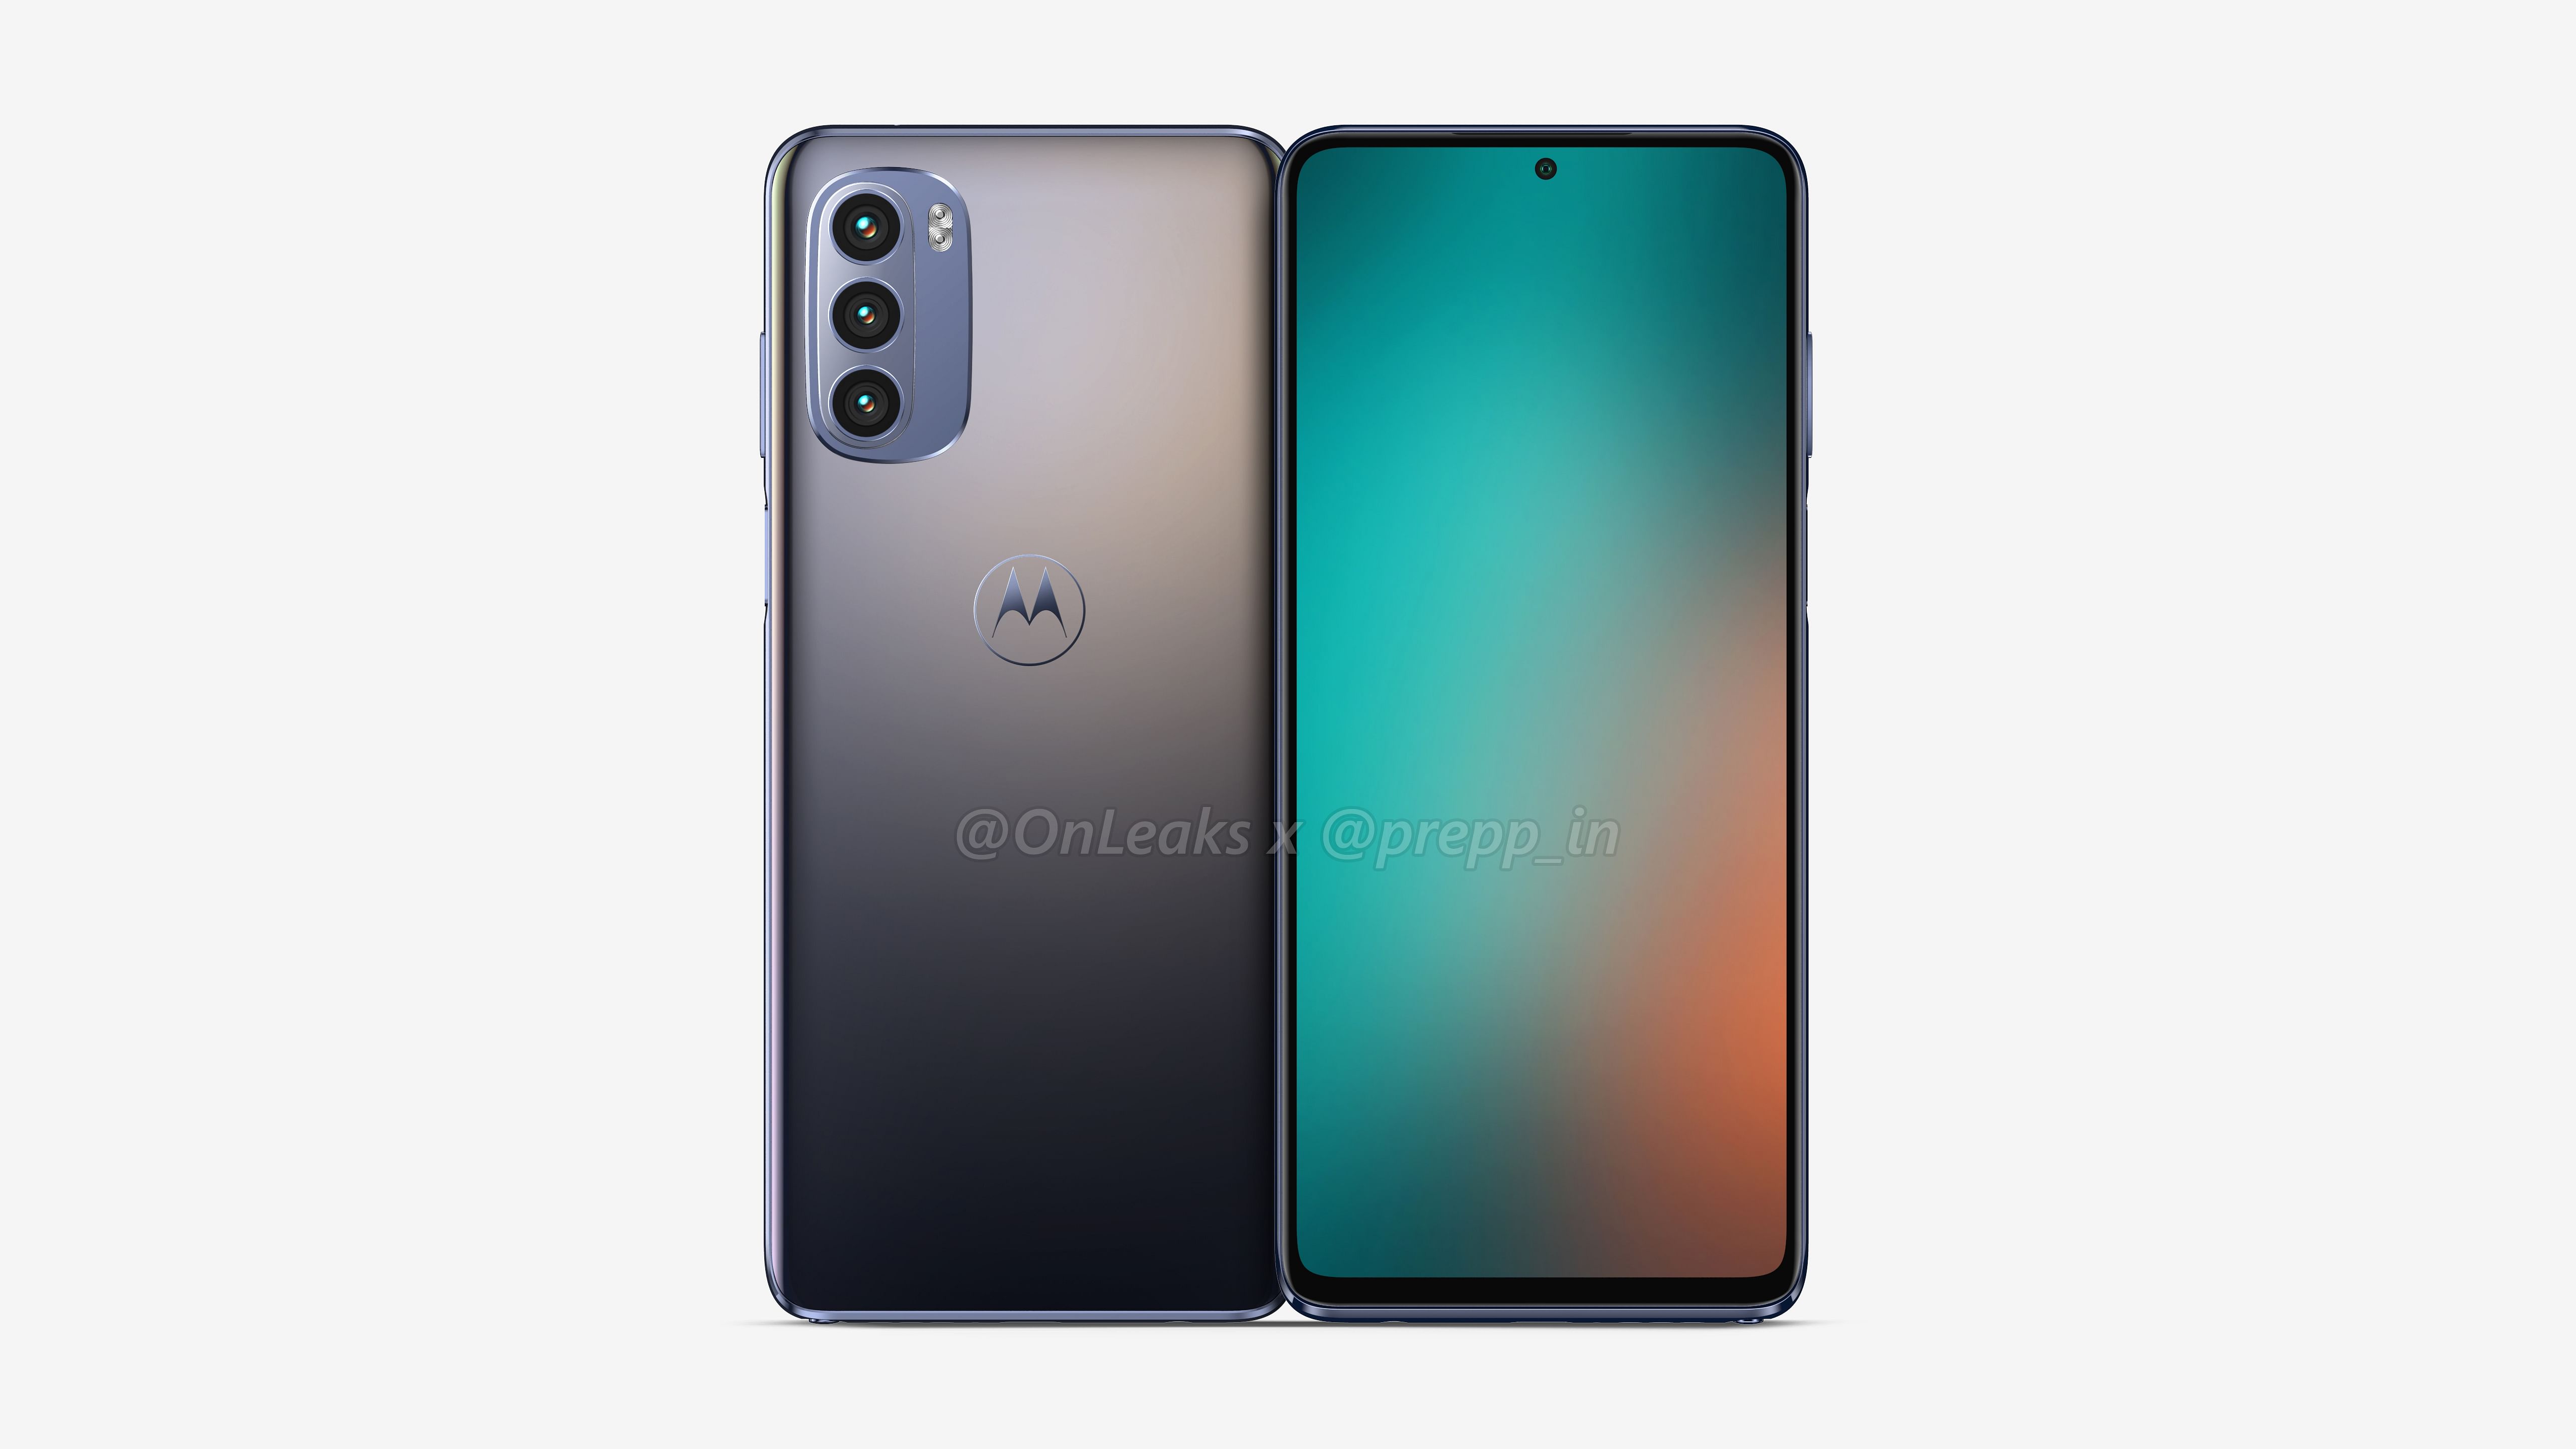 So soll das Moto G Stylus 2022 aussehen – ein neues Motorola-Smartphone mit 6,8-Zoll-Bildschirm, Eingabestift und 48-MP-Kamera